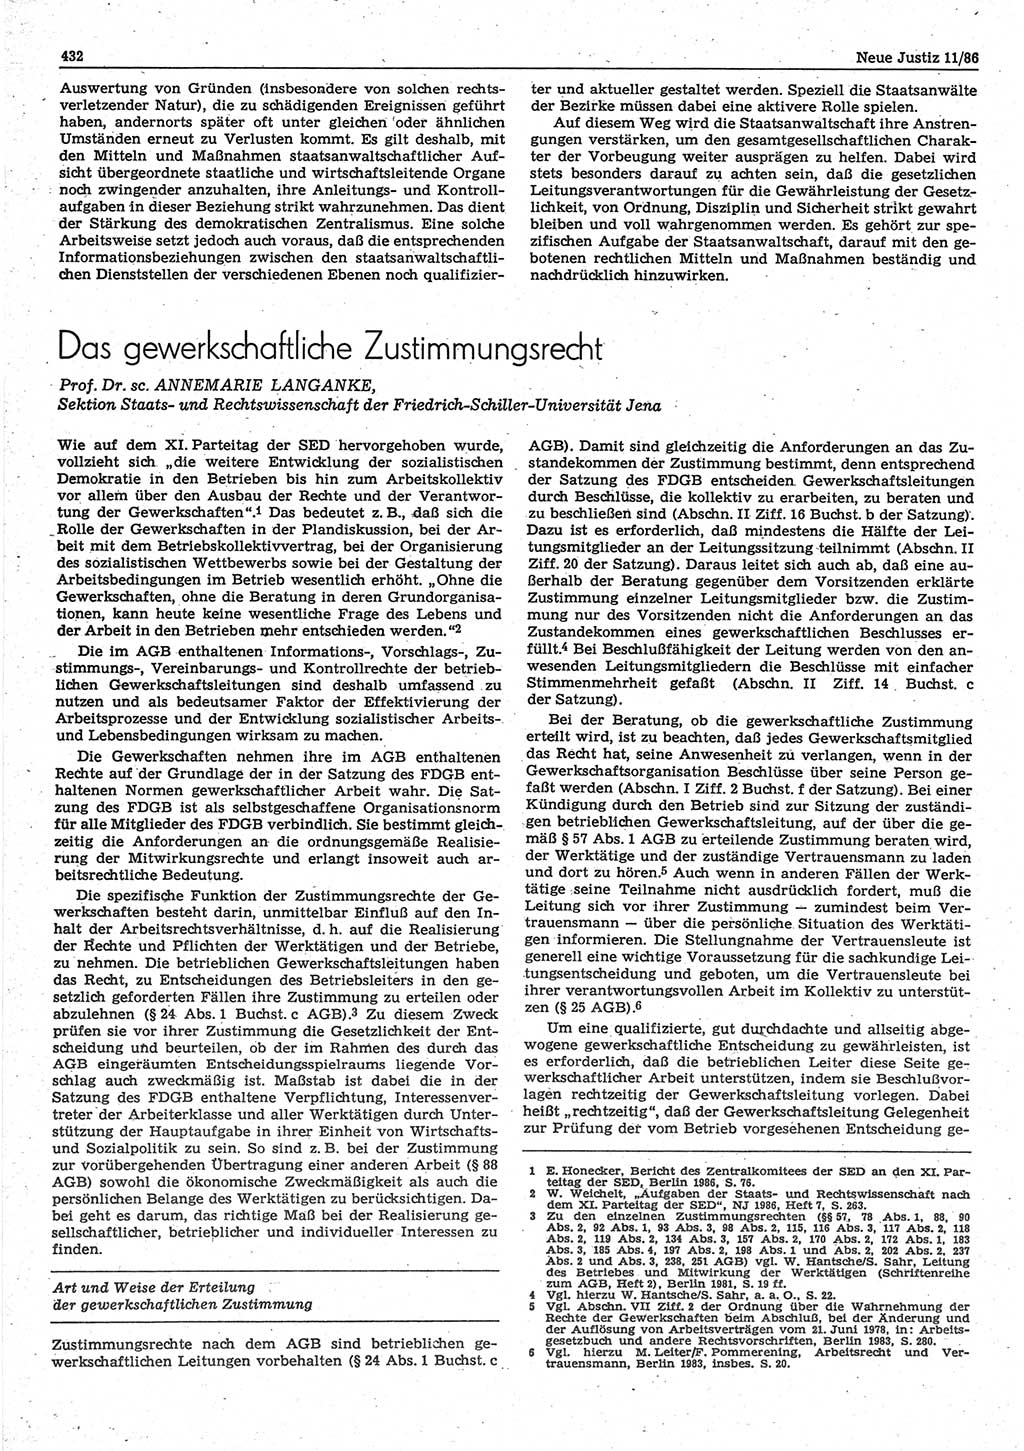 Neue Justiz (NJ), Zeitschrift für sozialistisches Recht und Gesetzlichkeit [Deutsche Demokratische Republik (DDR)], 40. Jahrgang 1986, Seite 432 (NJ DDR 1986, S. 432)